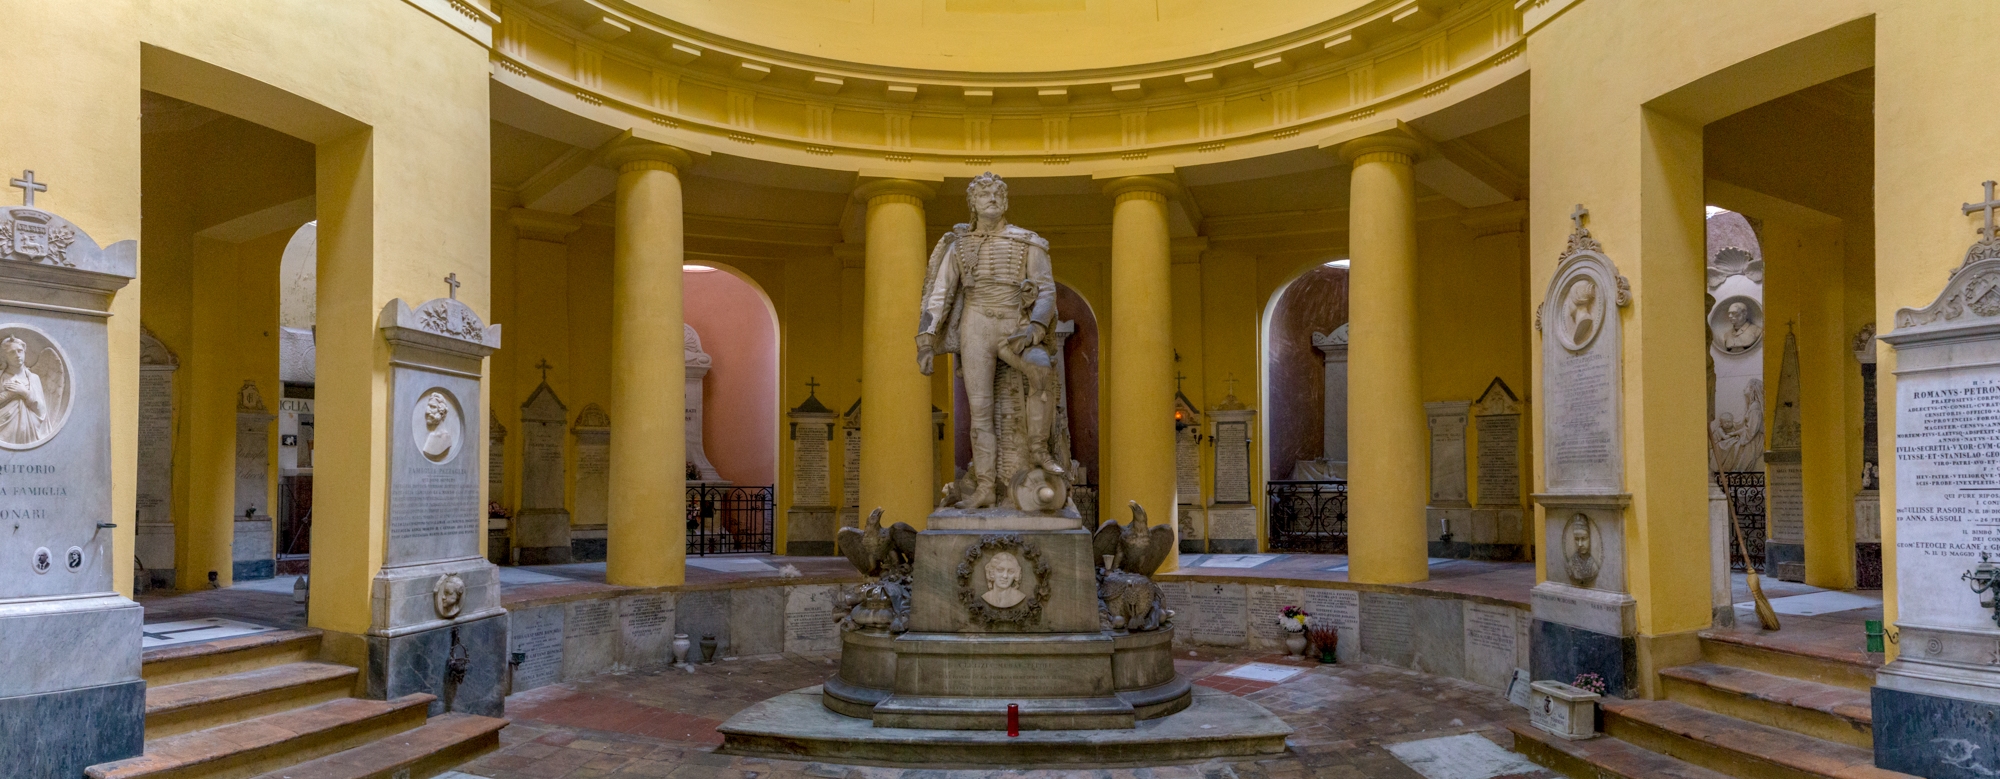 Panoramica interna della Certosa di Bologna - Federico Palestrina